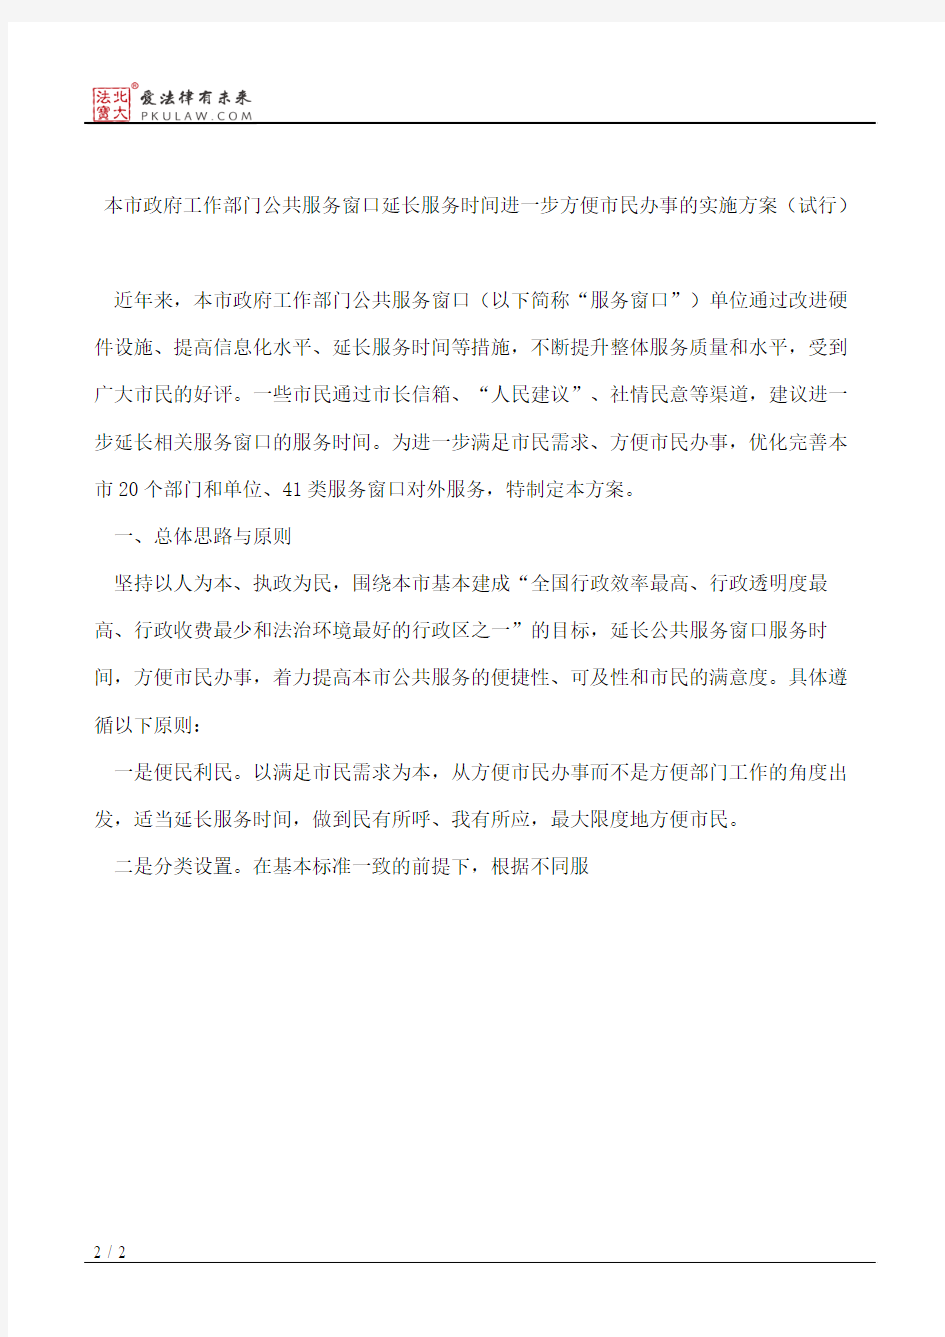 上海市人民政府办公厅关于印发《本市政府工作部门公共服务窗口延